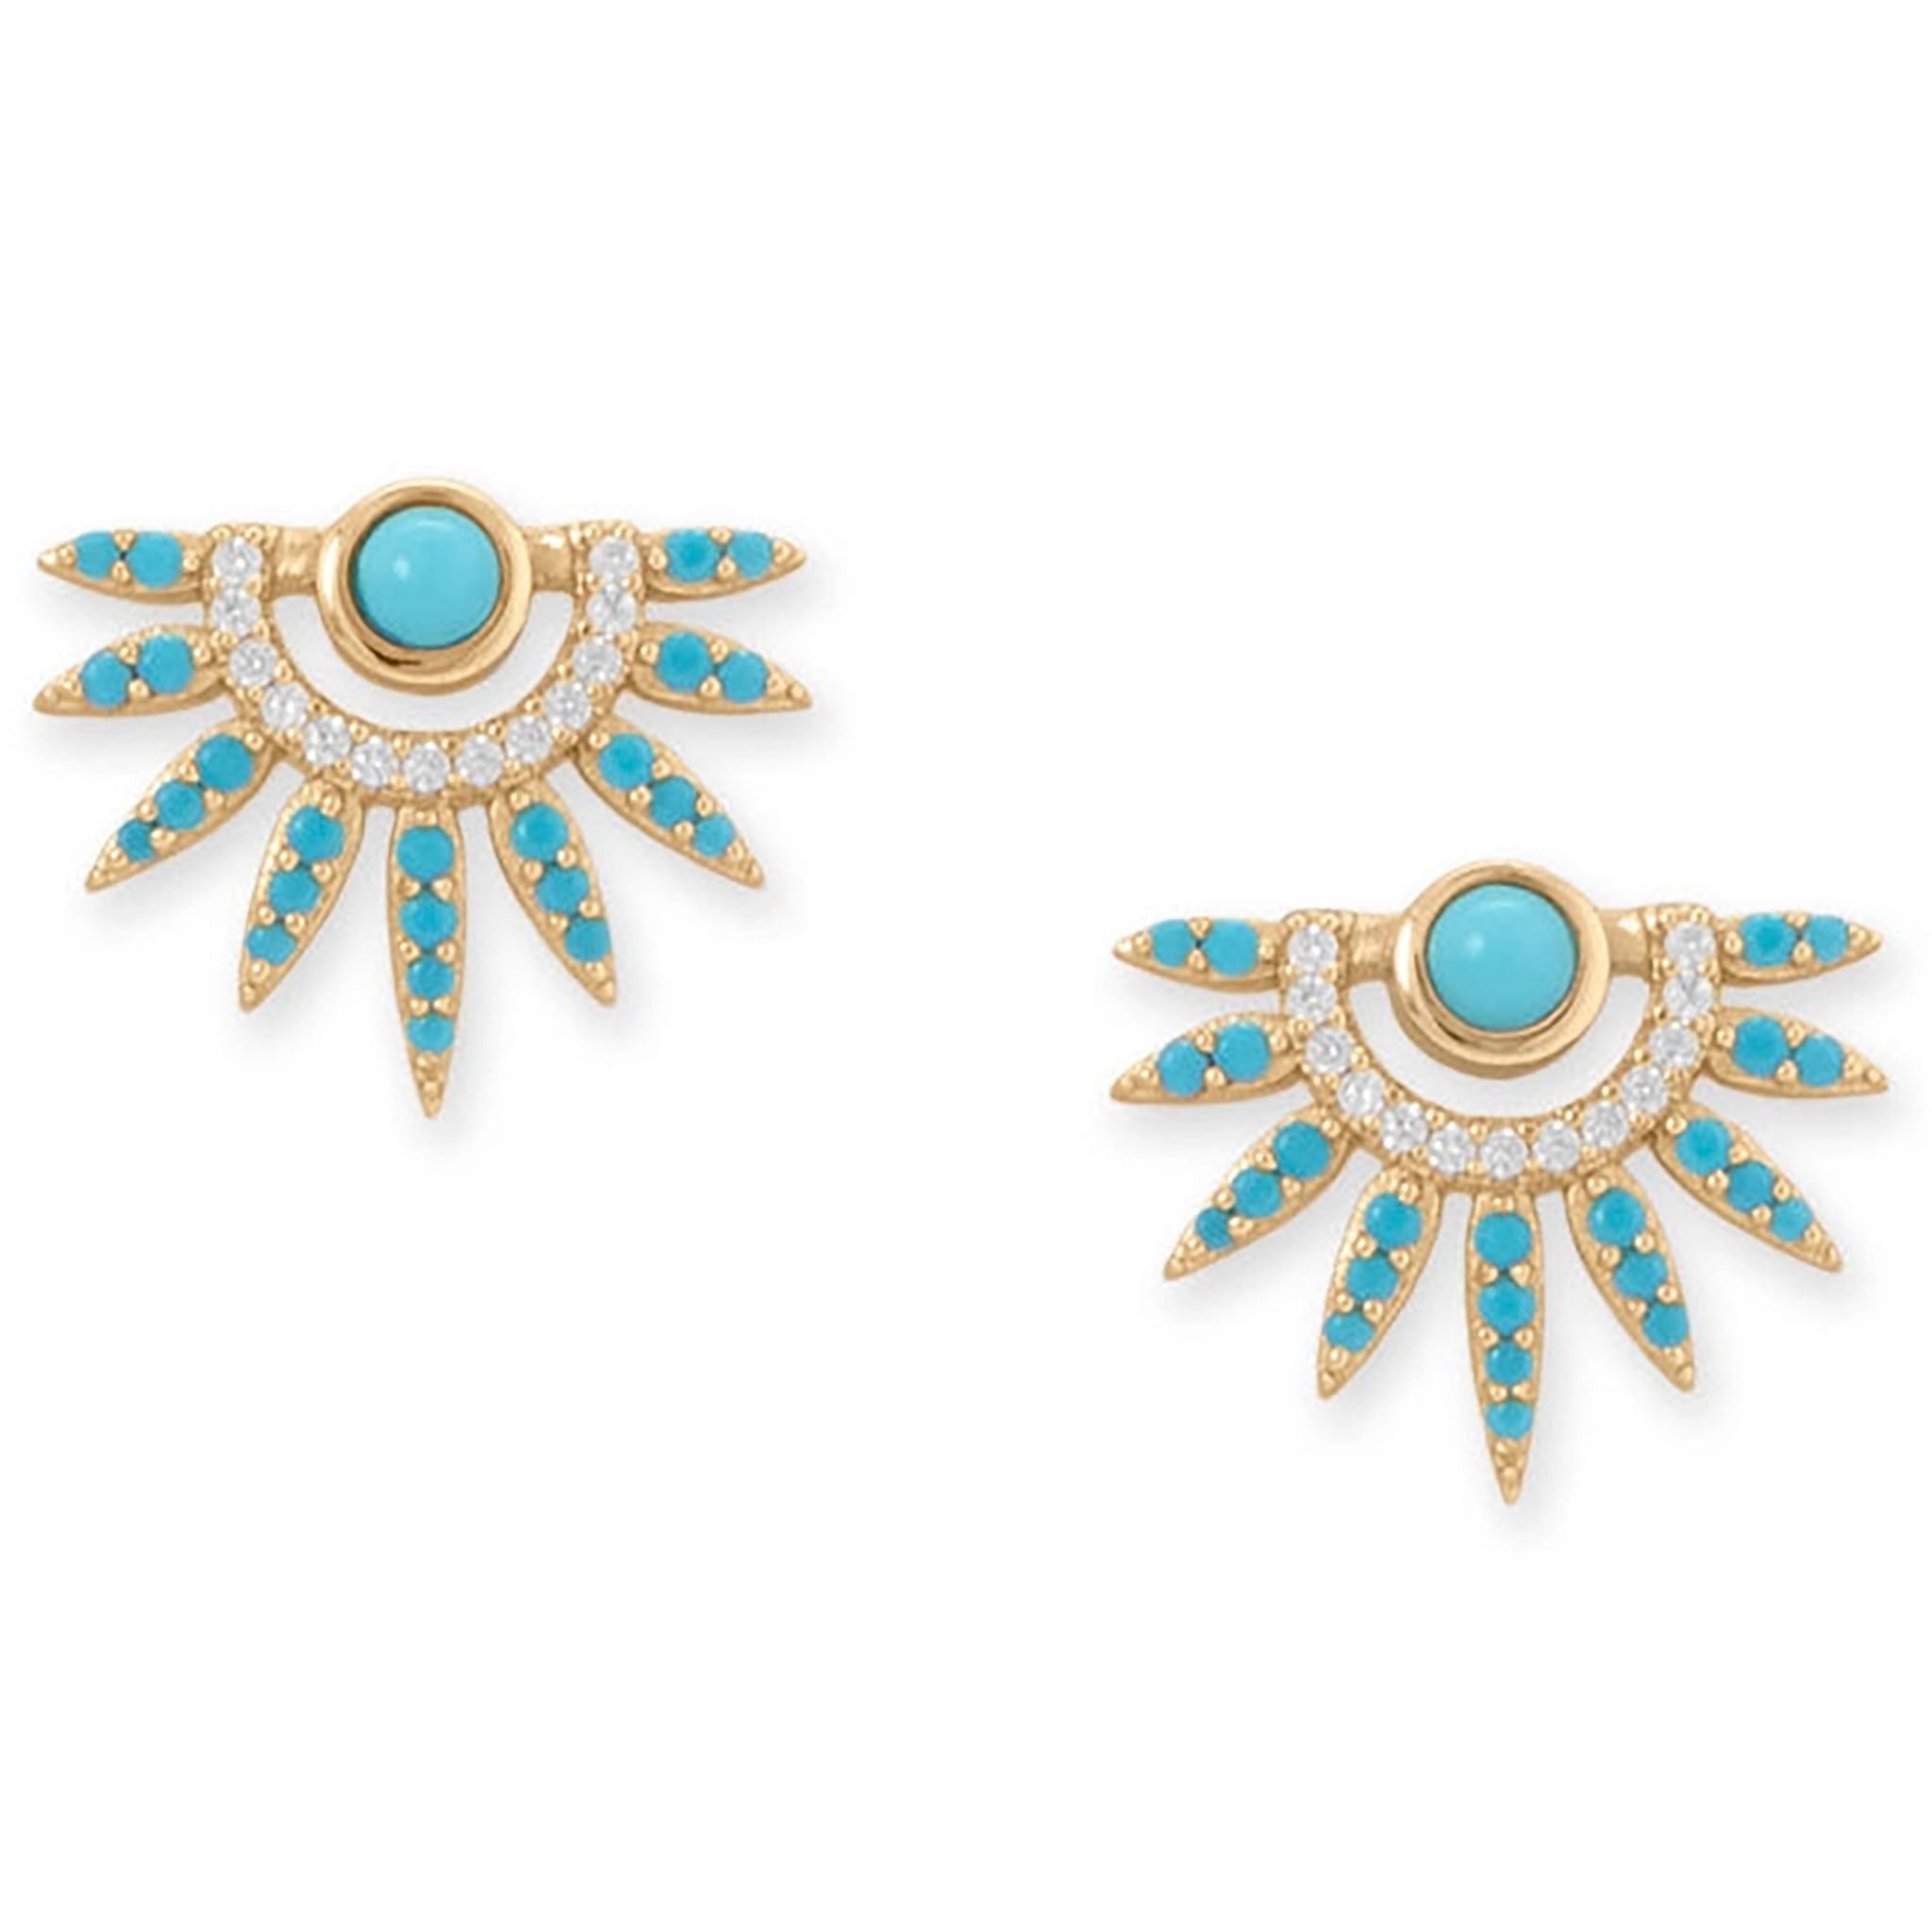 Turquoise and Zirconia Sunray Earrings